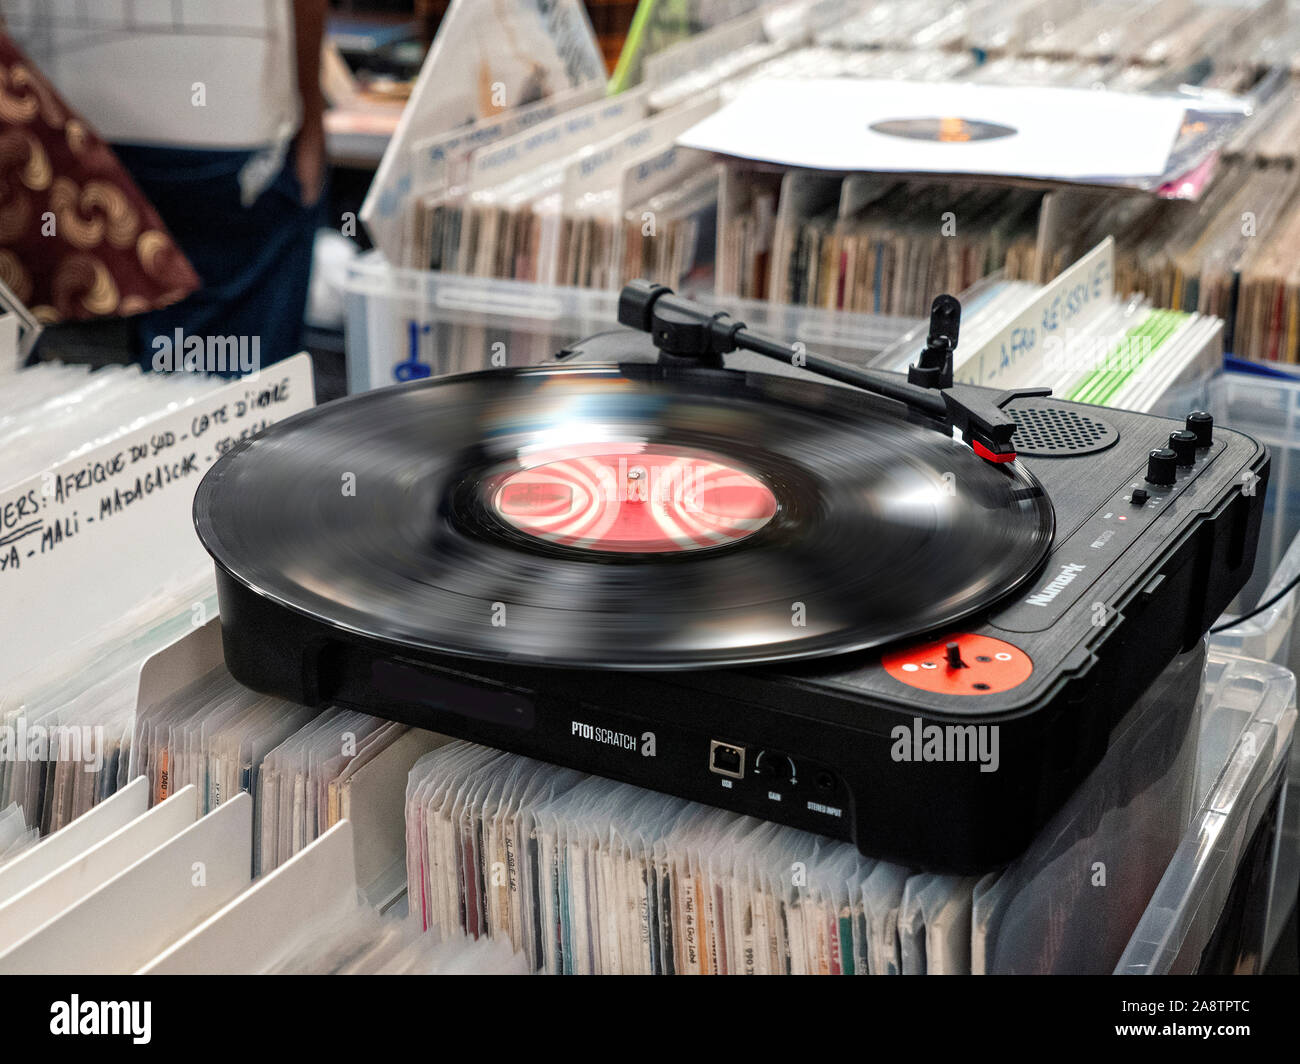 Paris liebt Vinyl Sammler Rekord in Paris Frankreich 10/11/2019 Stockfoto